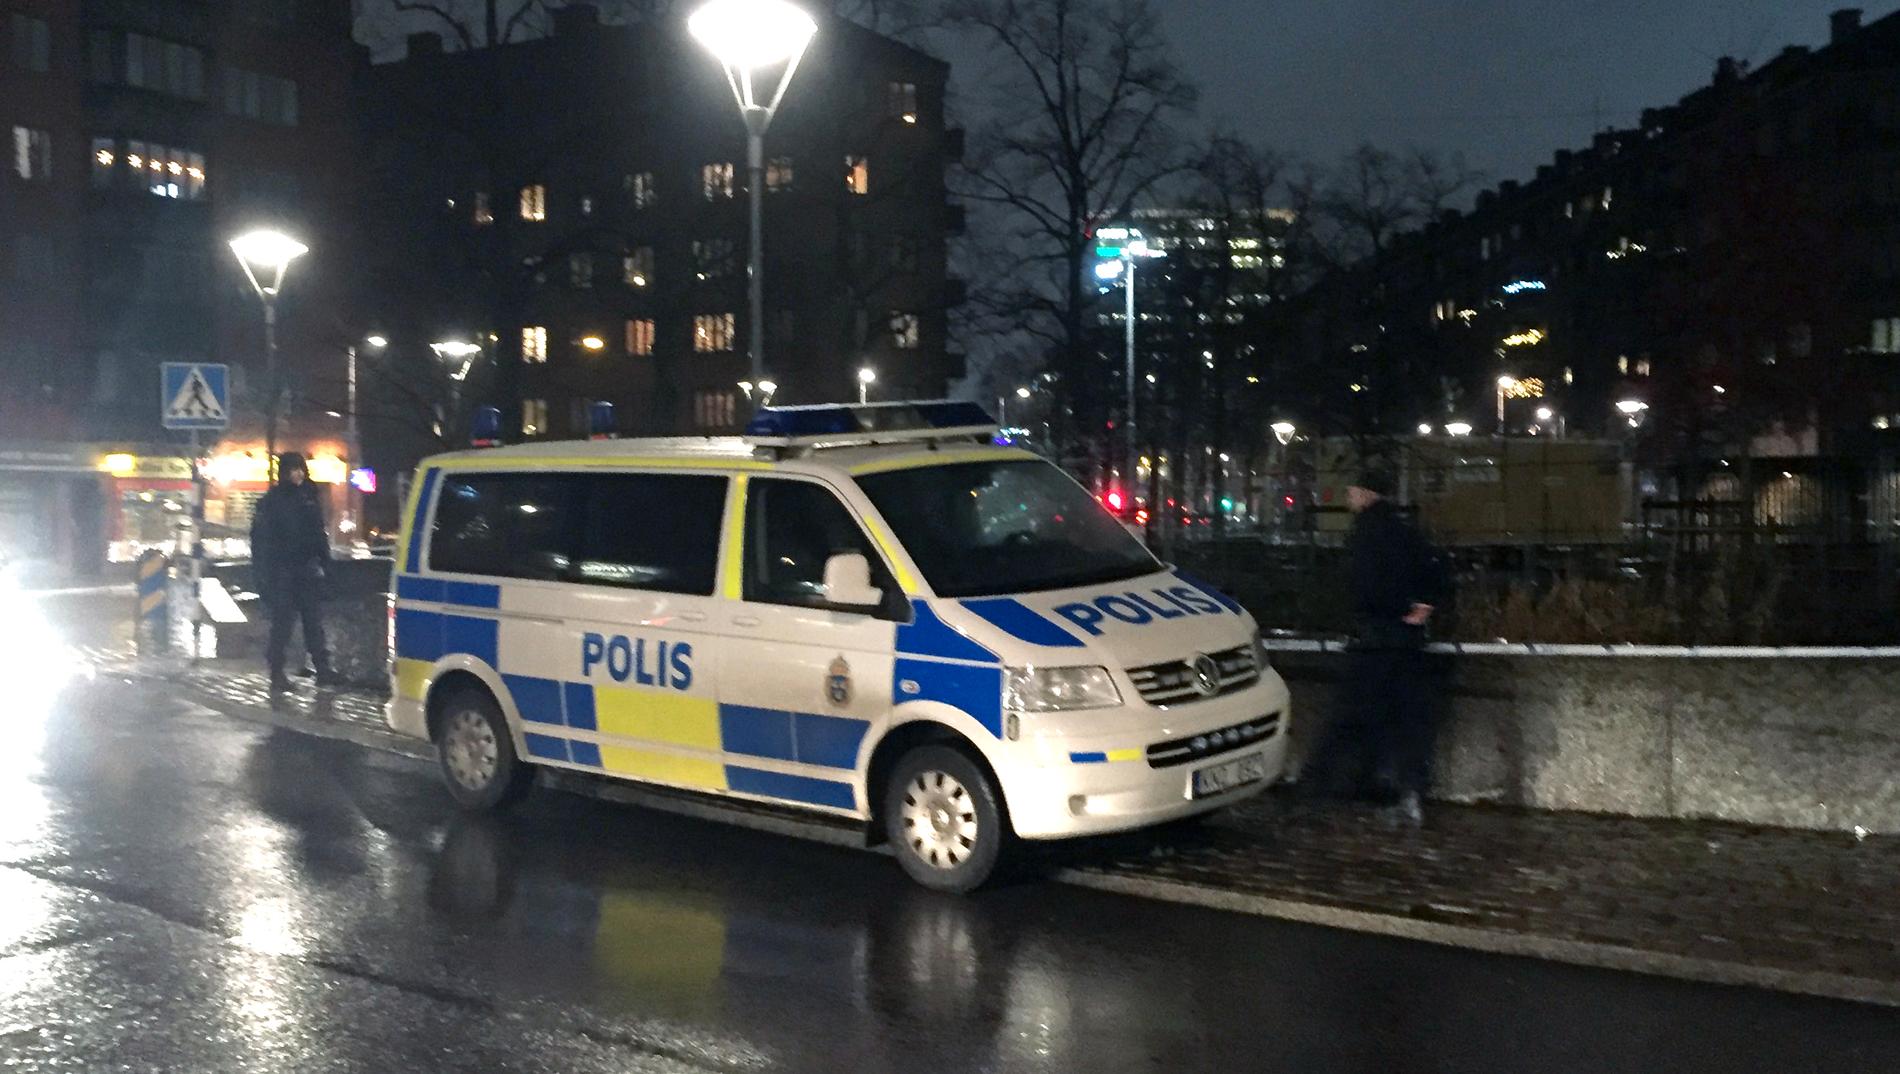 Polis på plats efter att en man hittats knivhuggen vid Odinplatsen i Göteborg. 